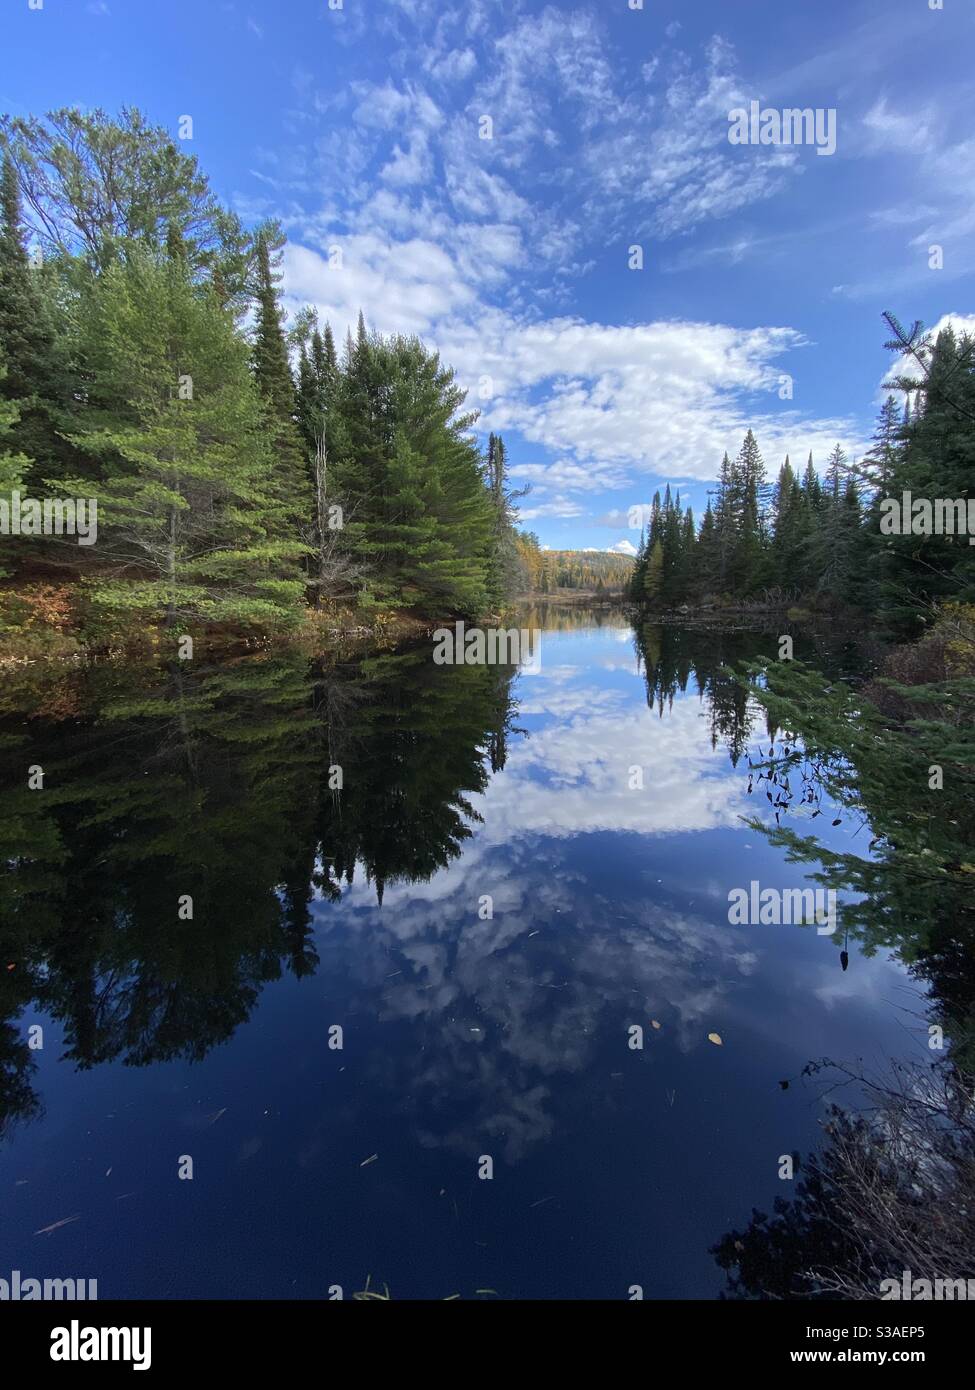 Narici del lago settentrionale circondati da pini bianchi e conifere. Lago di Opeongo, parco provinciale di Algonquin. Autunno 2020 che mostra il cielo blu e le riflessioni nuvolose sull'acqua still Foto Stock